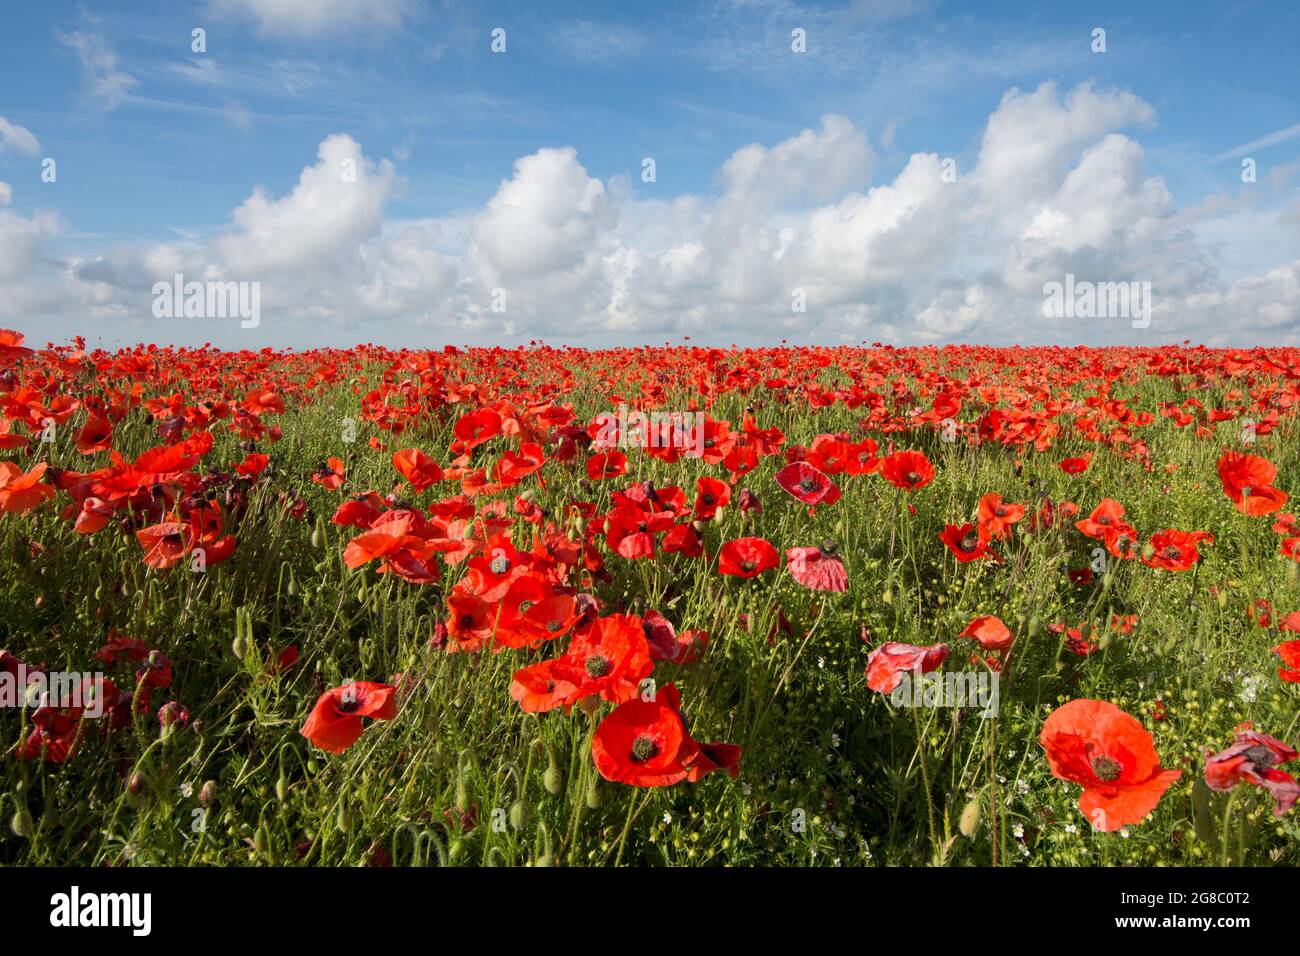 Feld von rotem Mohnblumen an der Seite eines Hügels gegen blauen Himmel mit weißen Wolken, Mohnblumen an der Skyline, horizon.growing im Feld von Flachs, Leinsamen, Stockfoto